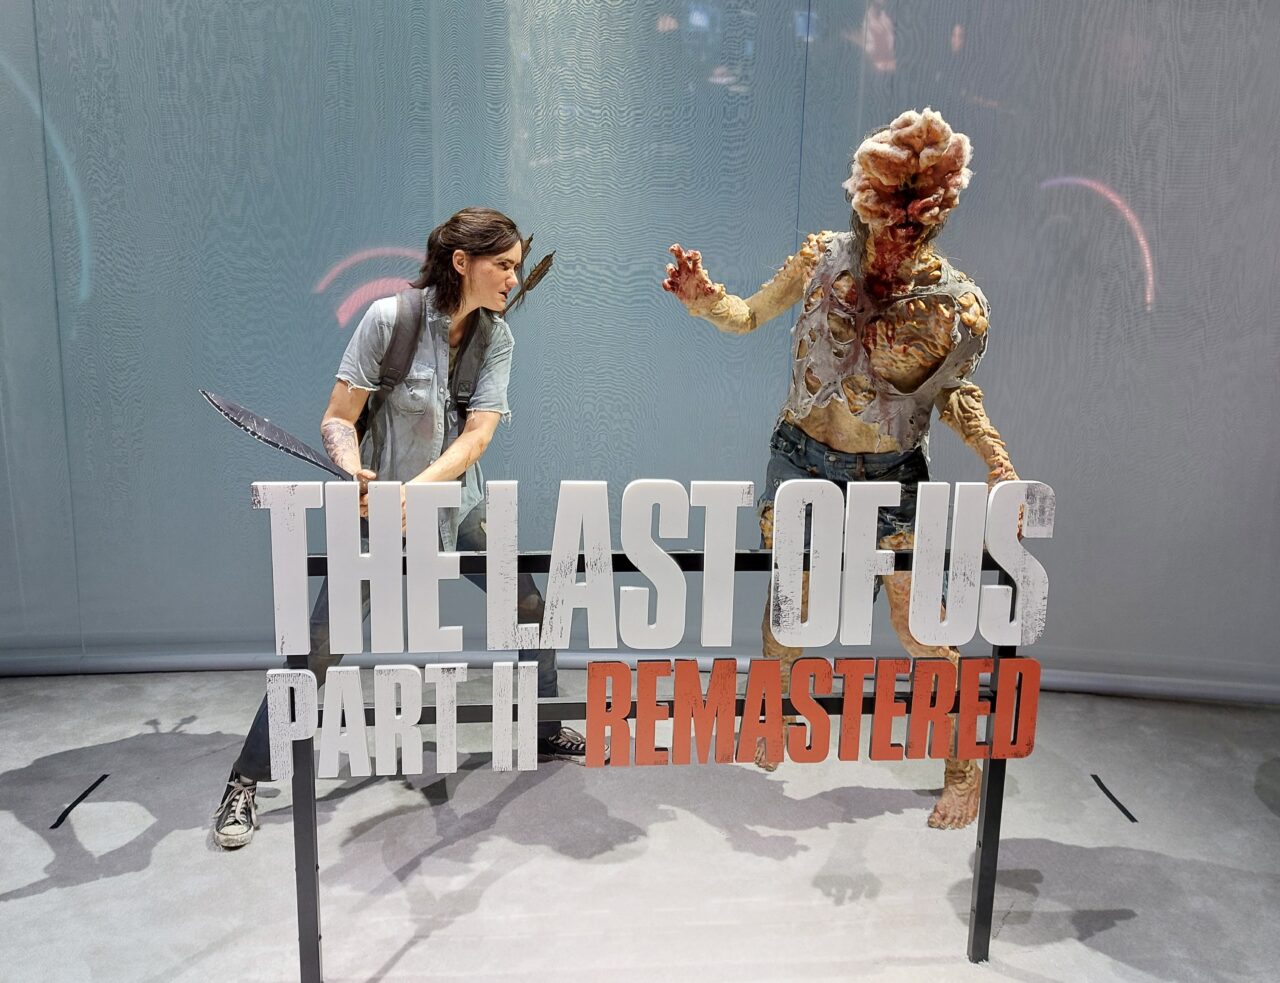 Postać ludzka trzymająca nóż przeciwko stworzeniu przypominającemu zombie, na tle napisu "THE LAST OF US PART II REMASTERED". Promocja gry na PS5